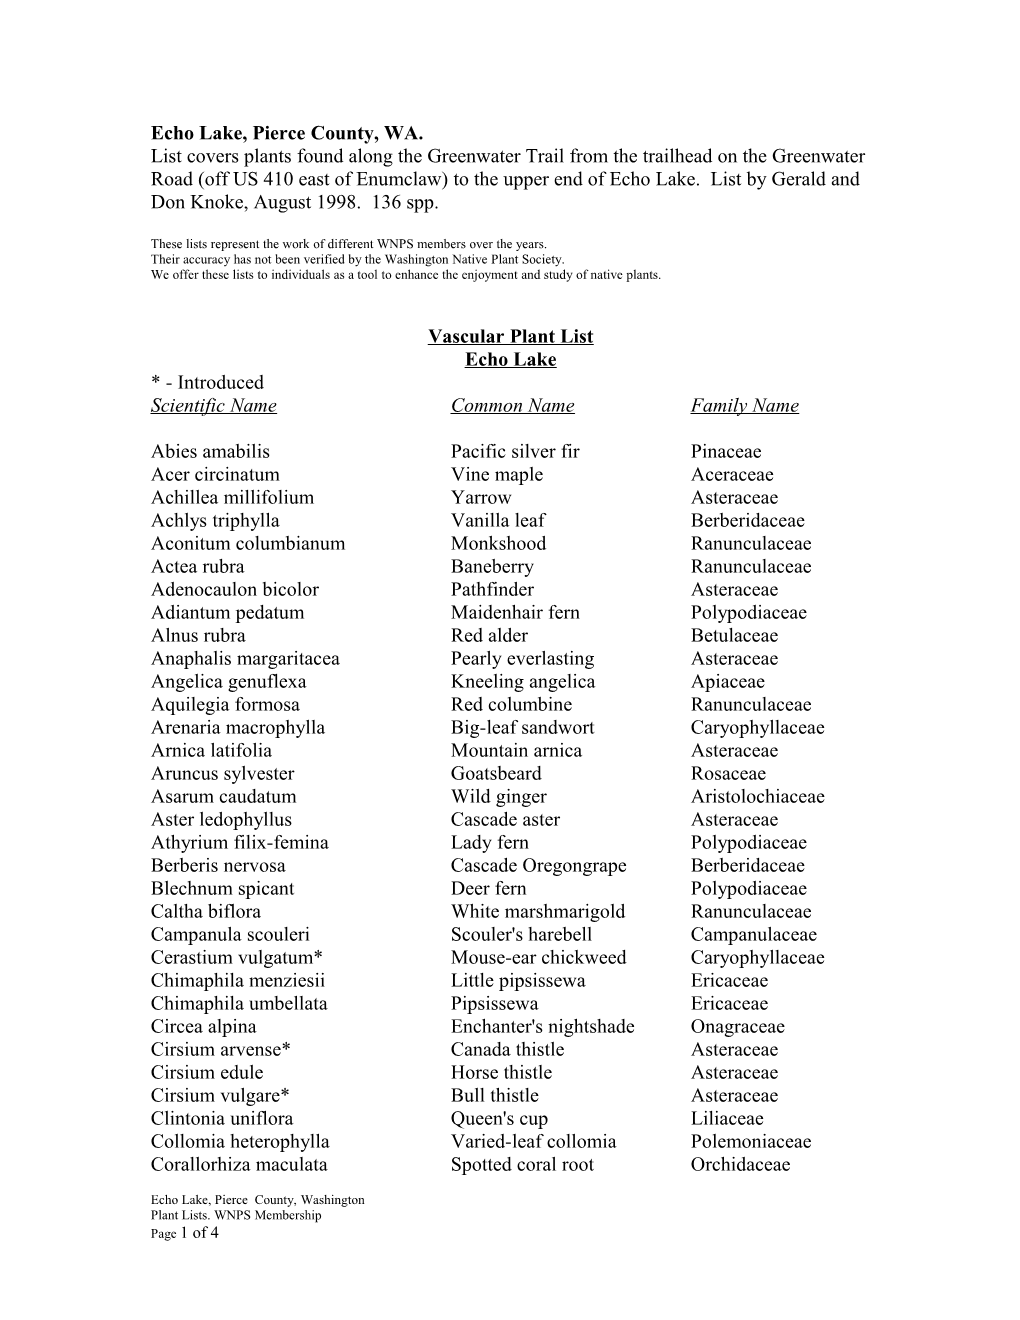 Vascular Plant List s12